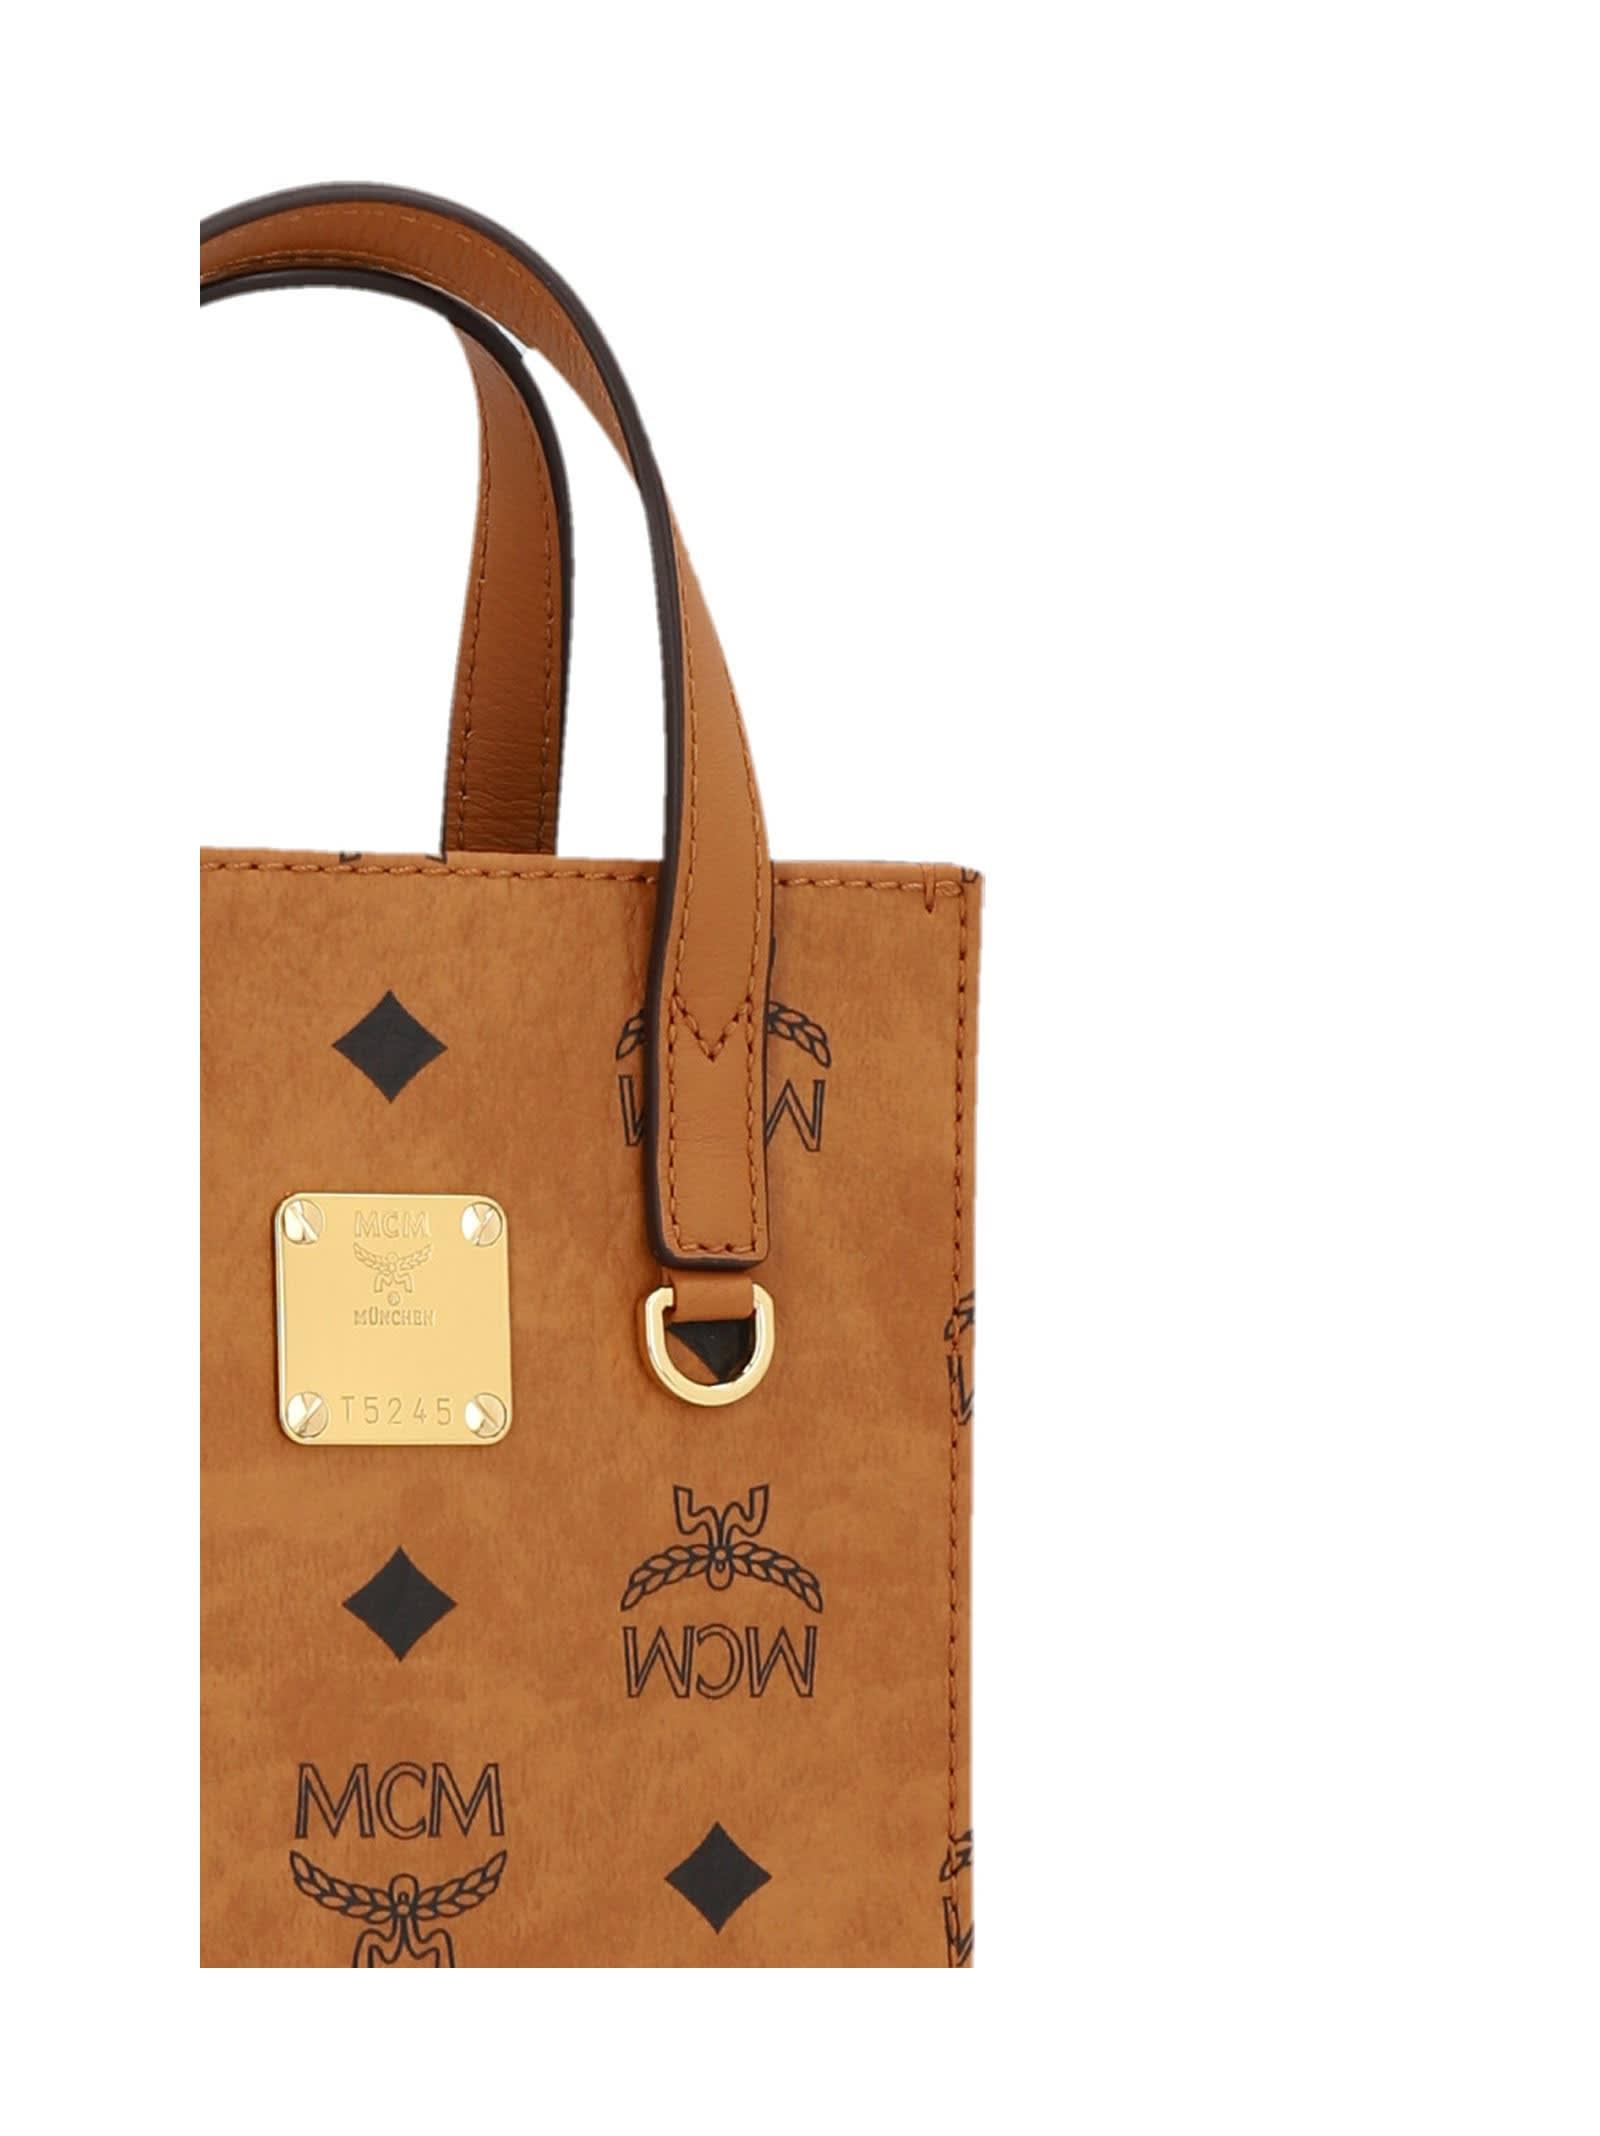 Mcm shopping bag/ shoulder bag / crossbody bag.